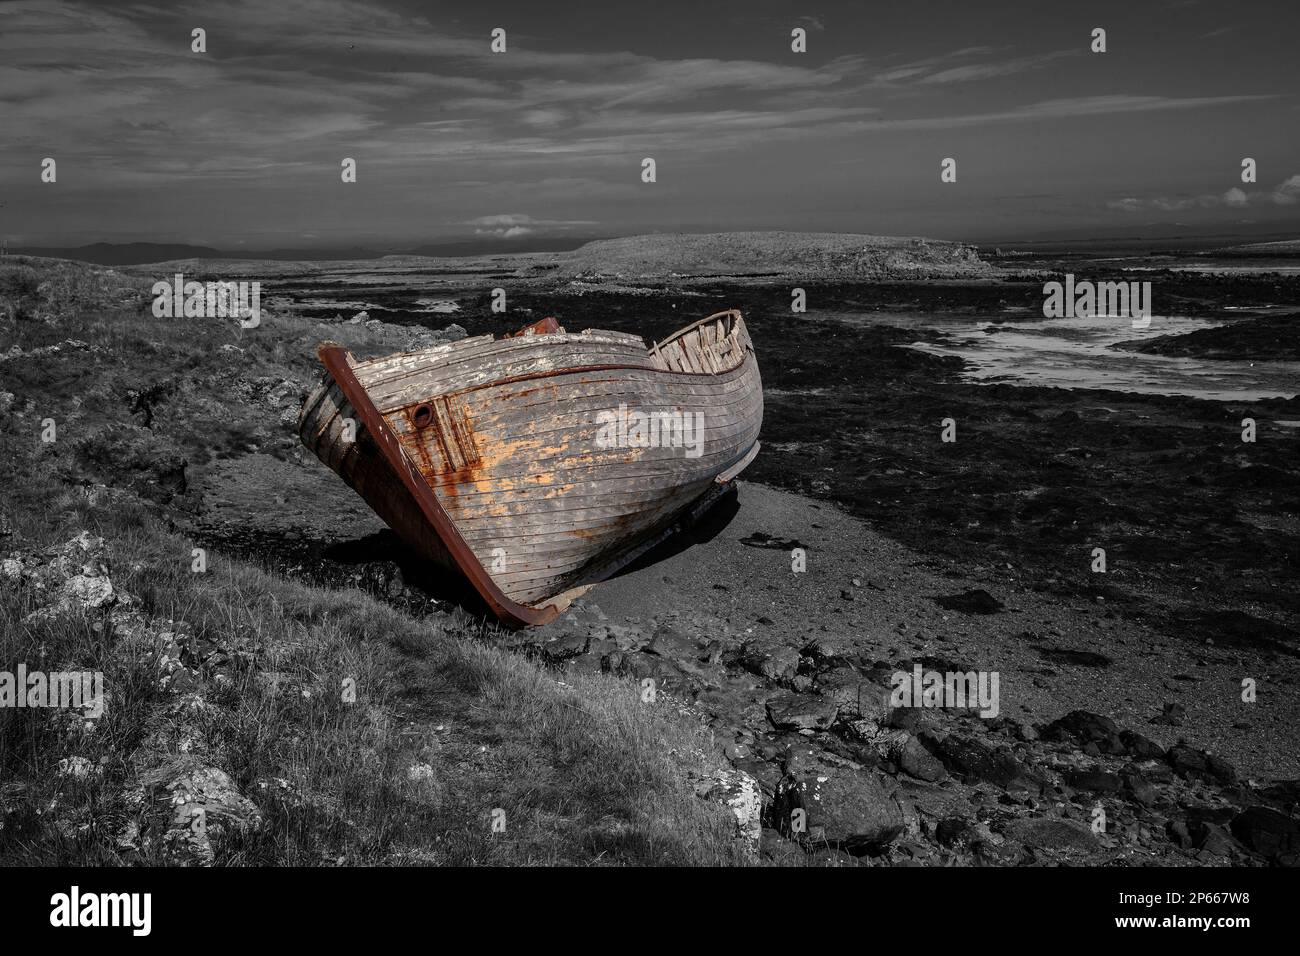 Interprétation artistique d'un bateau en bois naufragé dans une baie d'Islande sur fond monochrome Banque D'Images